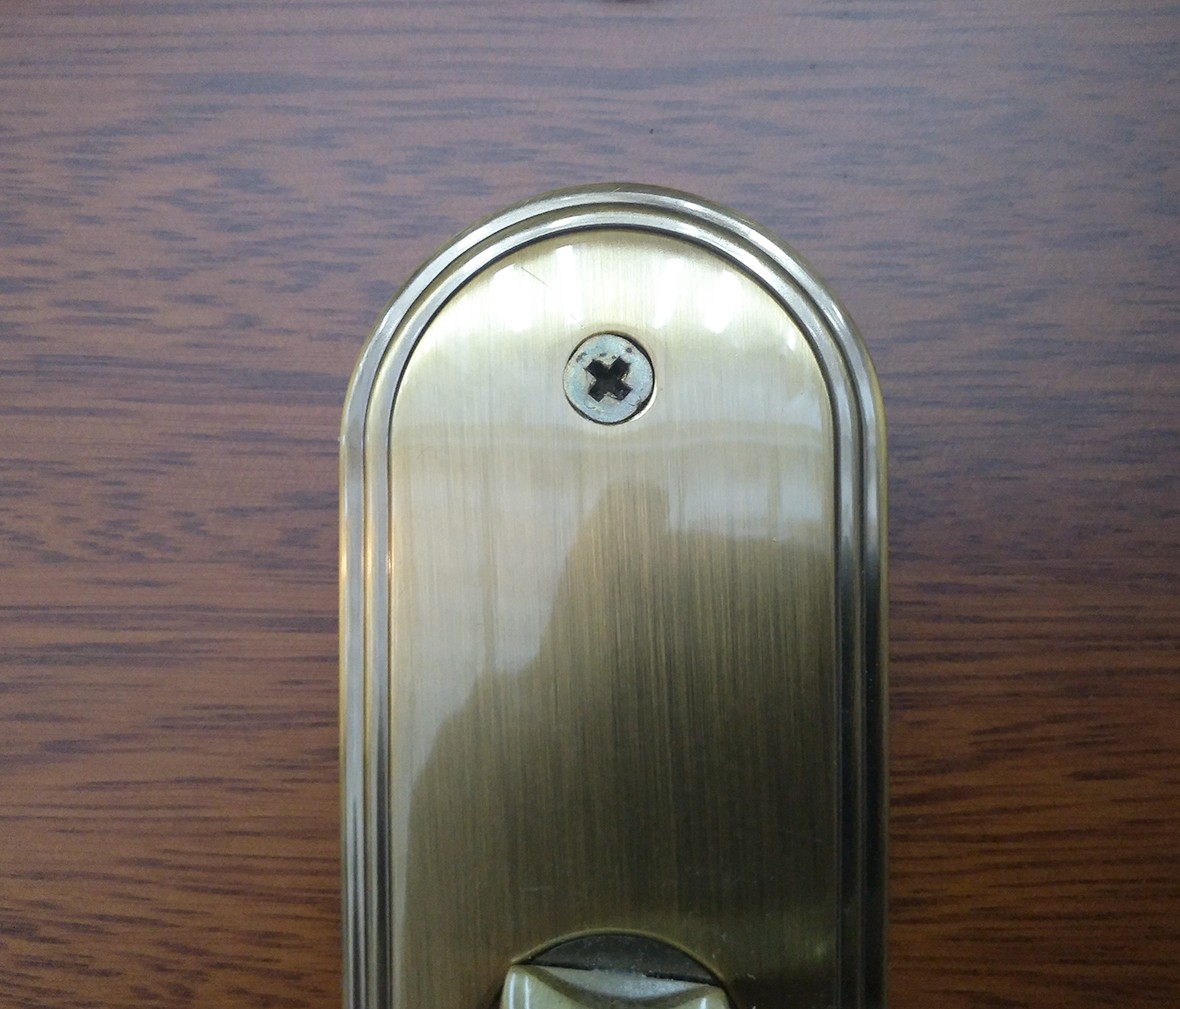 晾霸五金 米开朗72-9079AC型号门锁 锌合金材质 优质门锁 细节